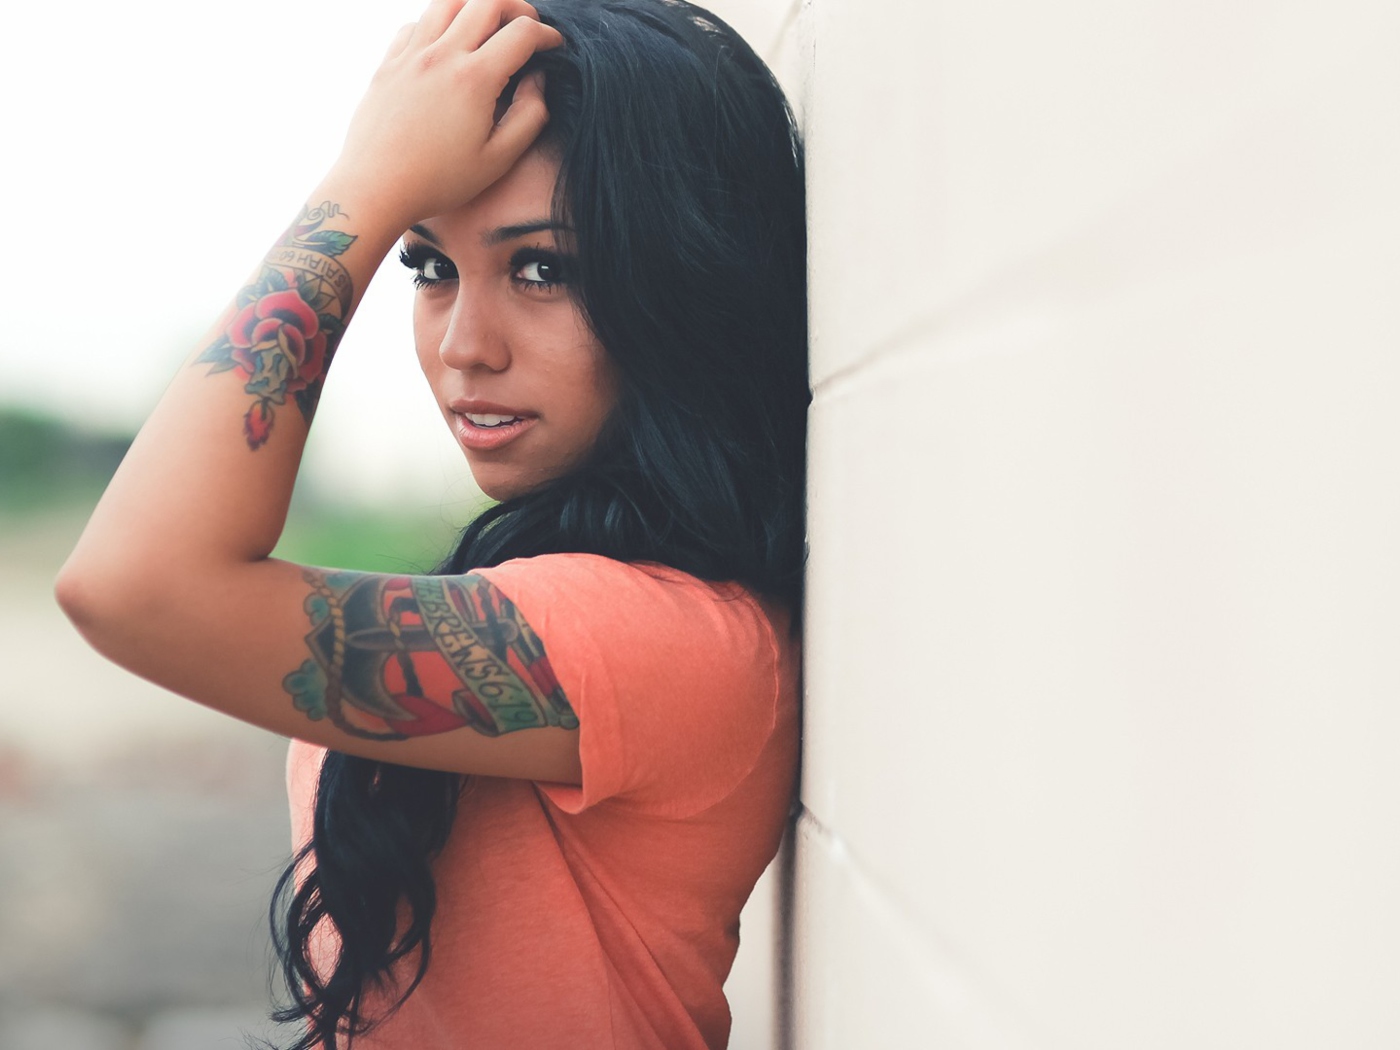 Beautiful Latin American Model With Tattoos screenshot #1 1400x1050